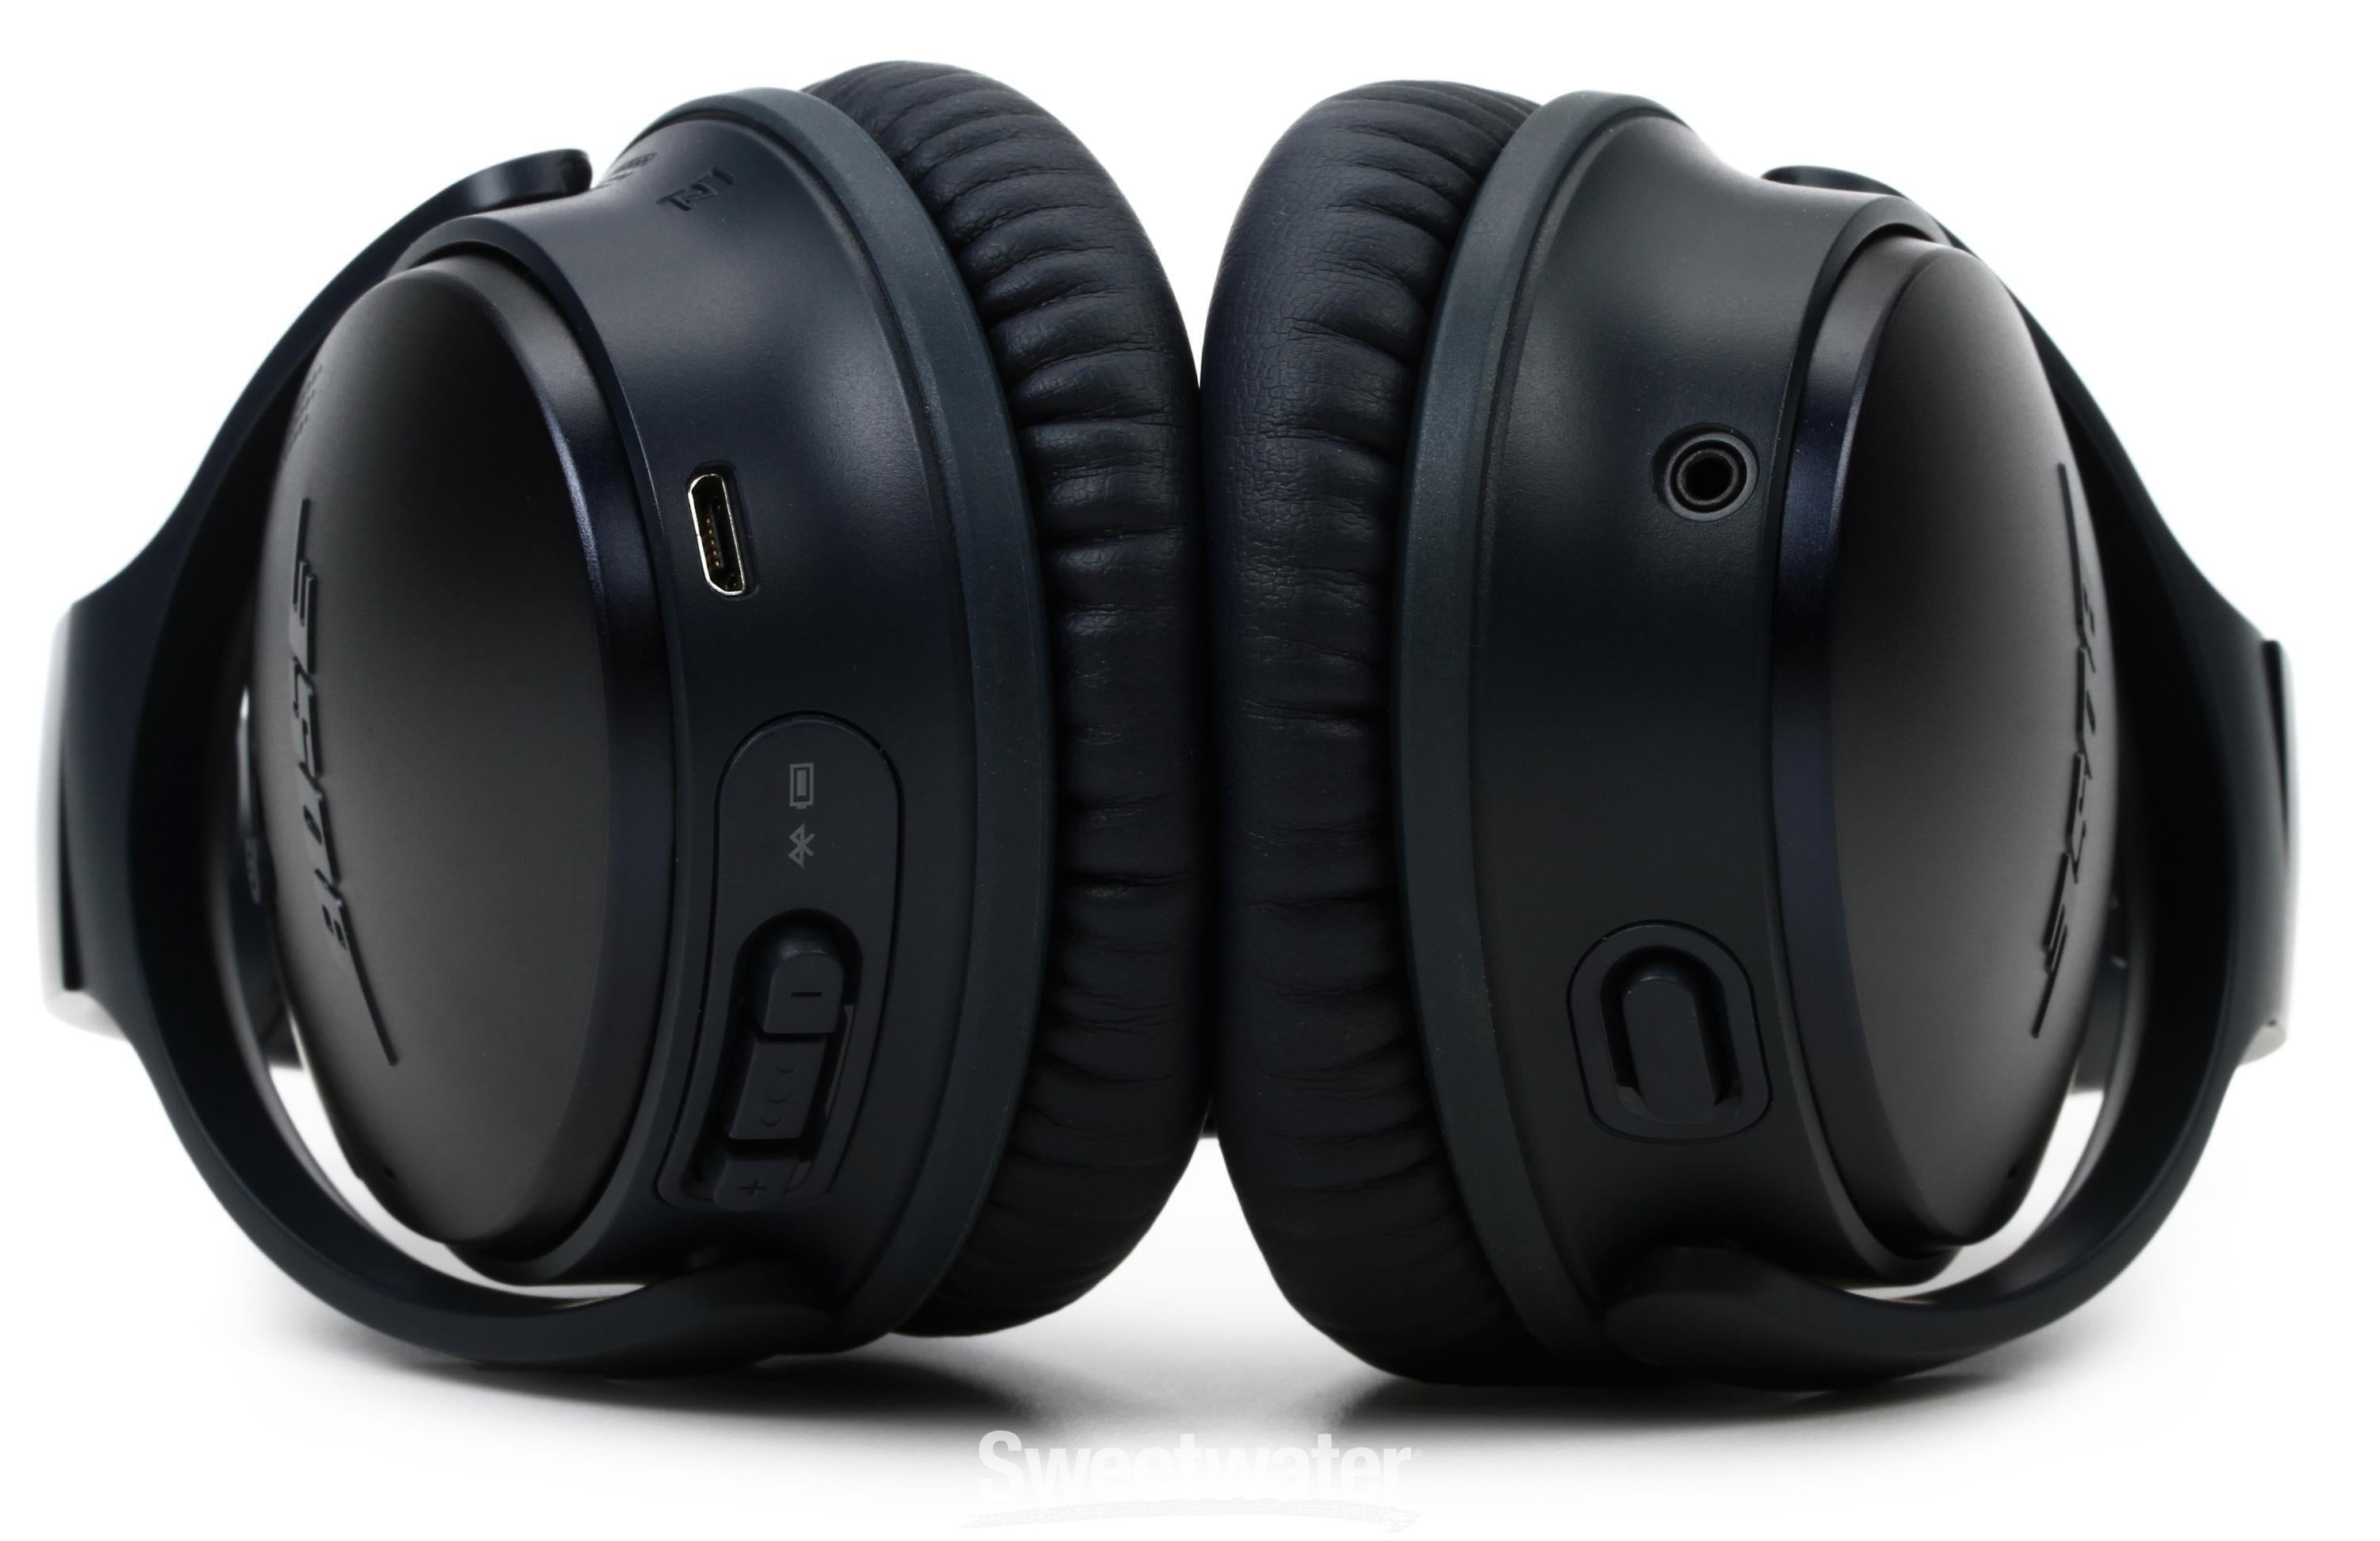 Bose QuietComfort 35 Wireless Headphones II Bluetooth Noise